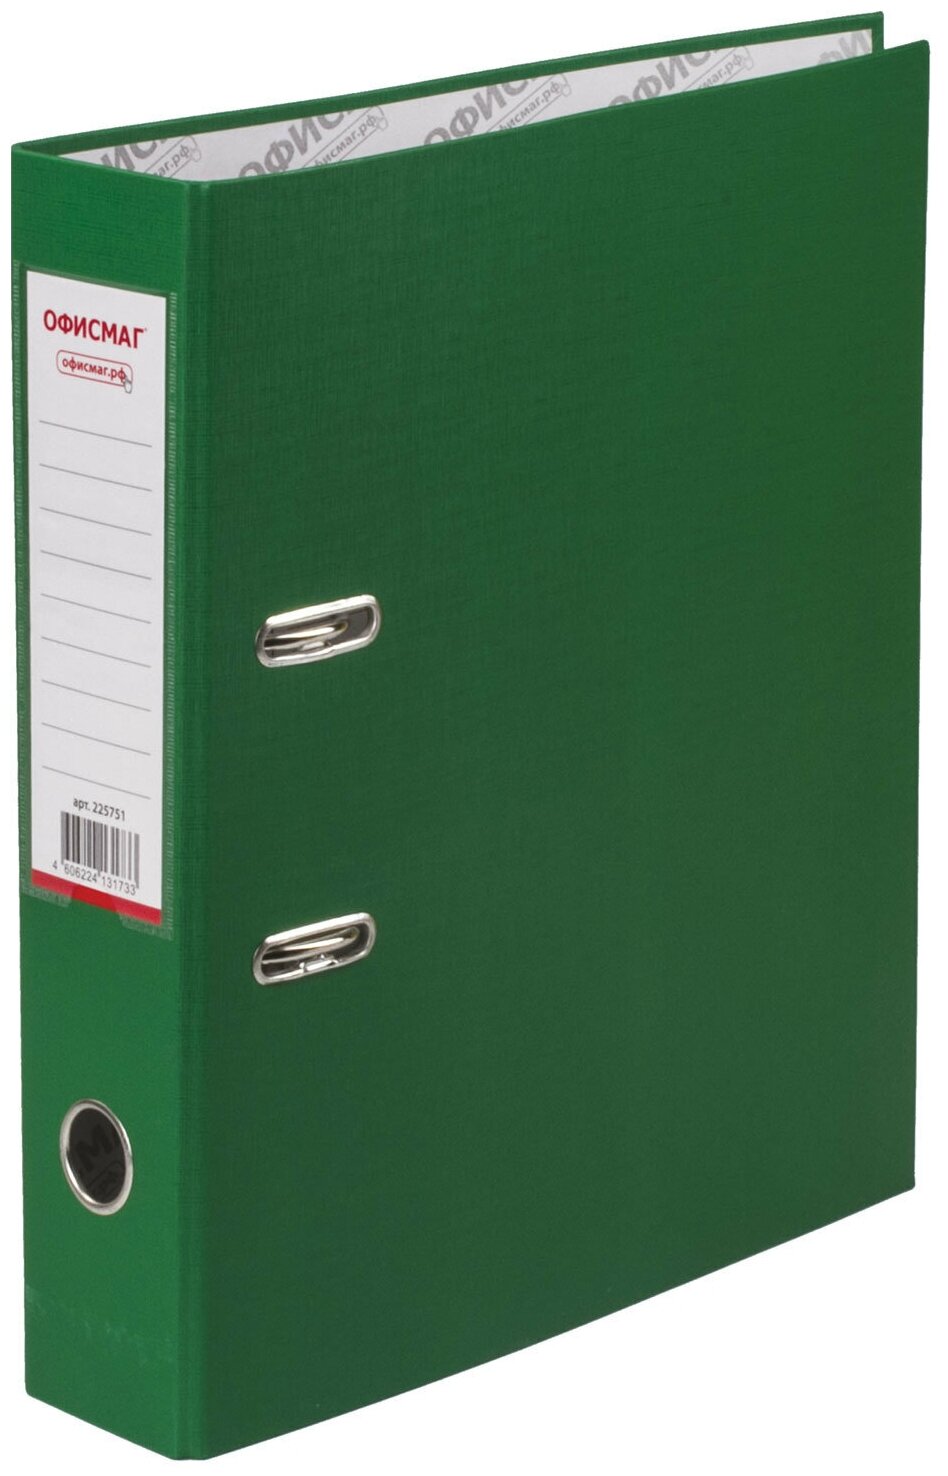 Папка-регистратор офисмаг с арочным механизмом, покрытие из ПВХ, 75 мм, зеленая, 225751